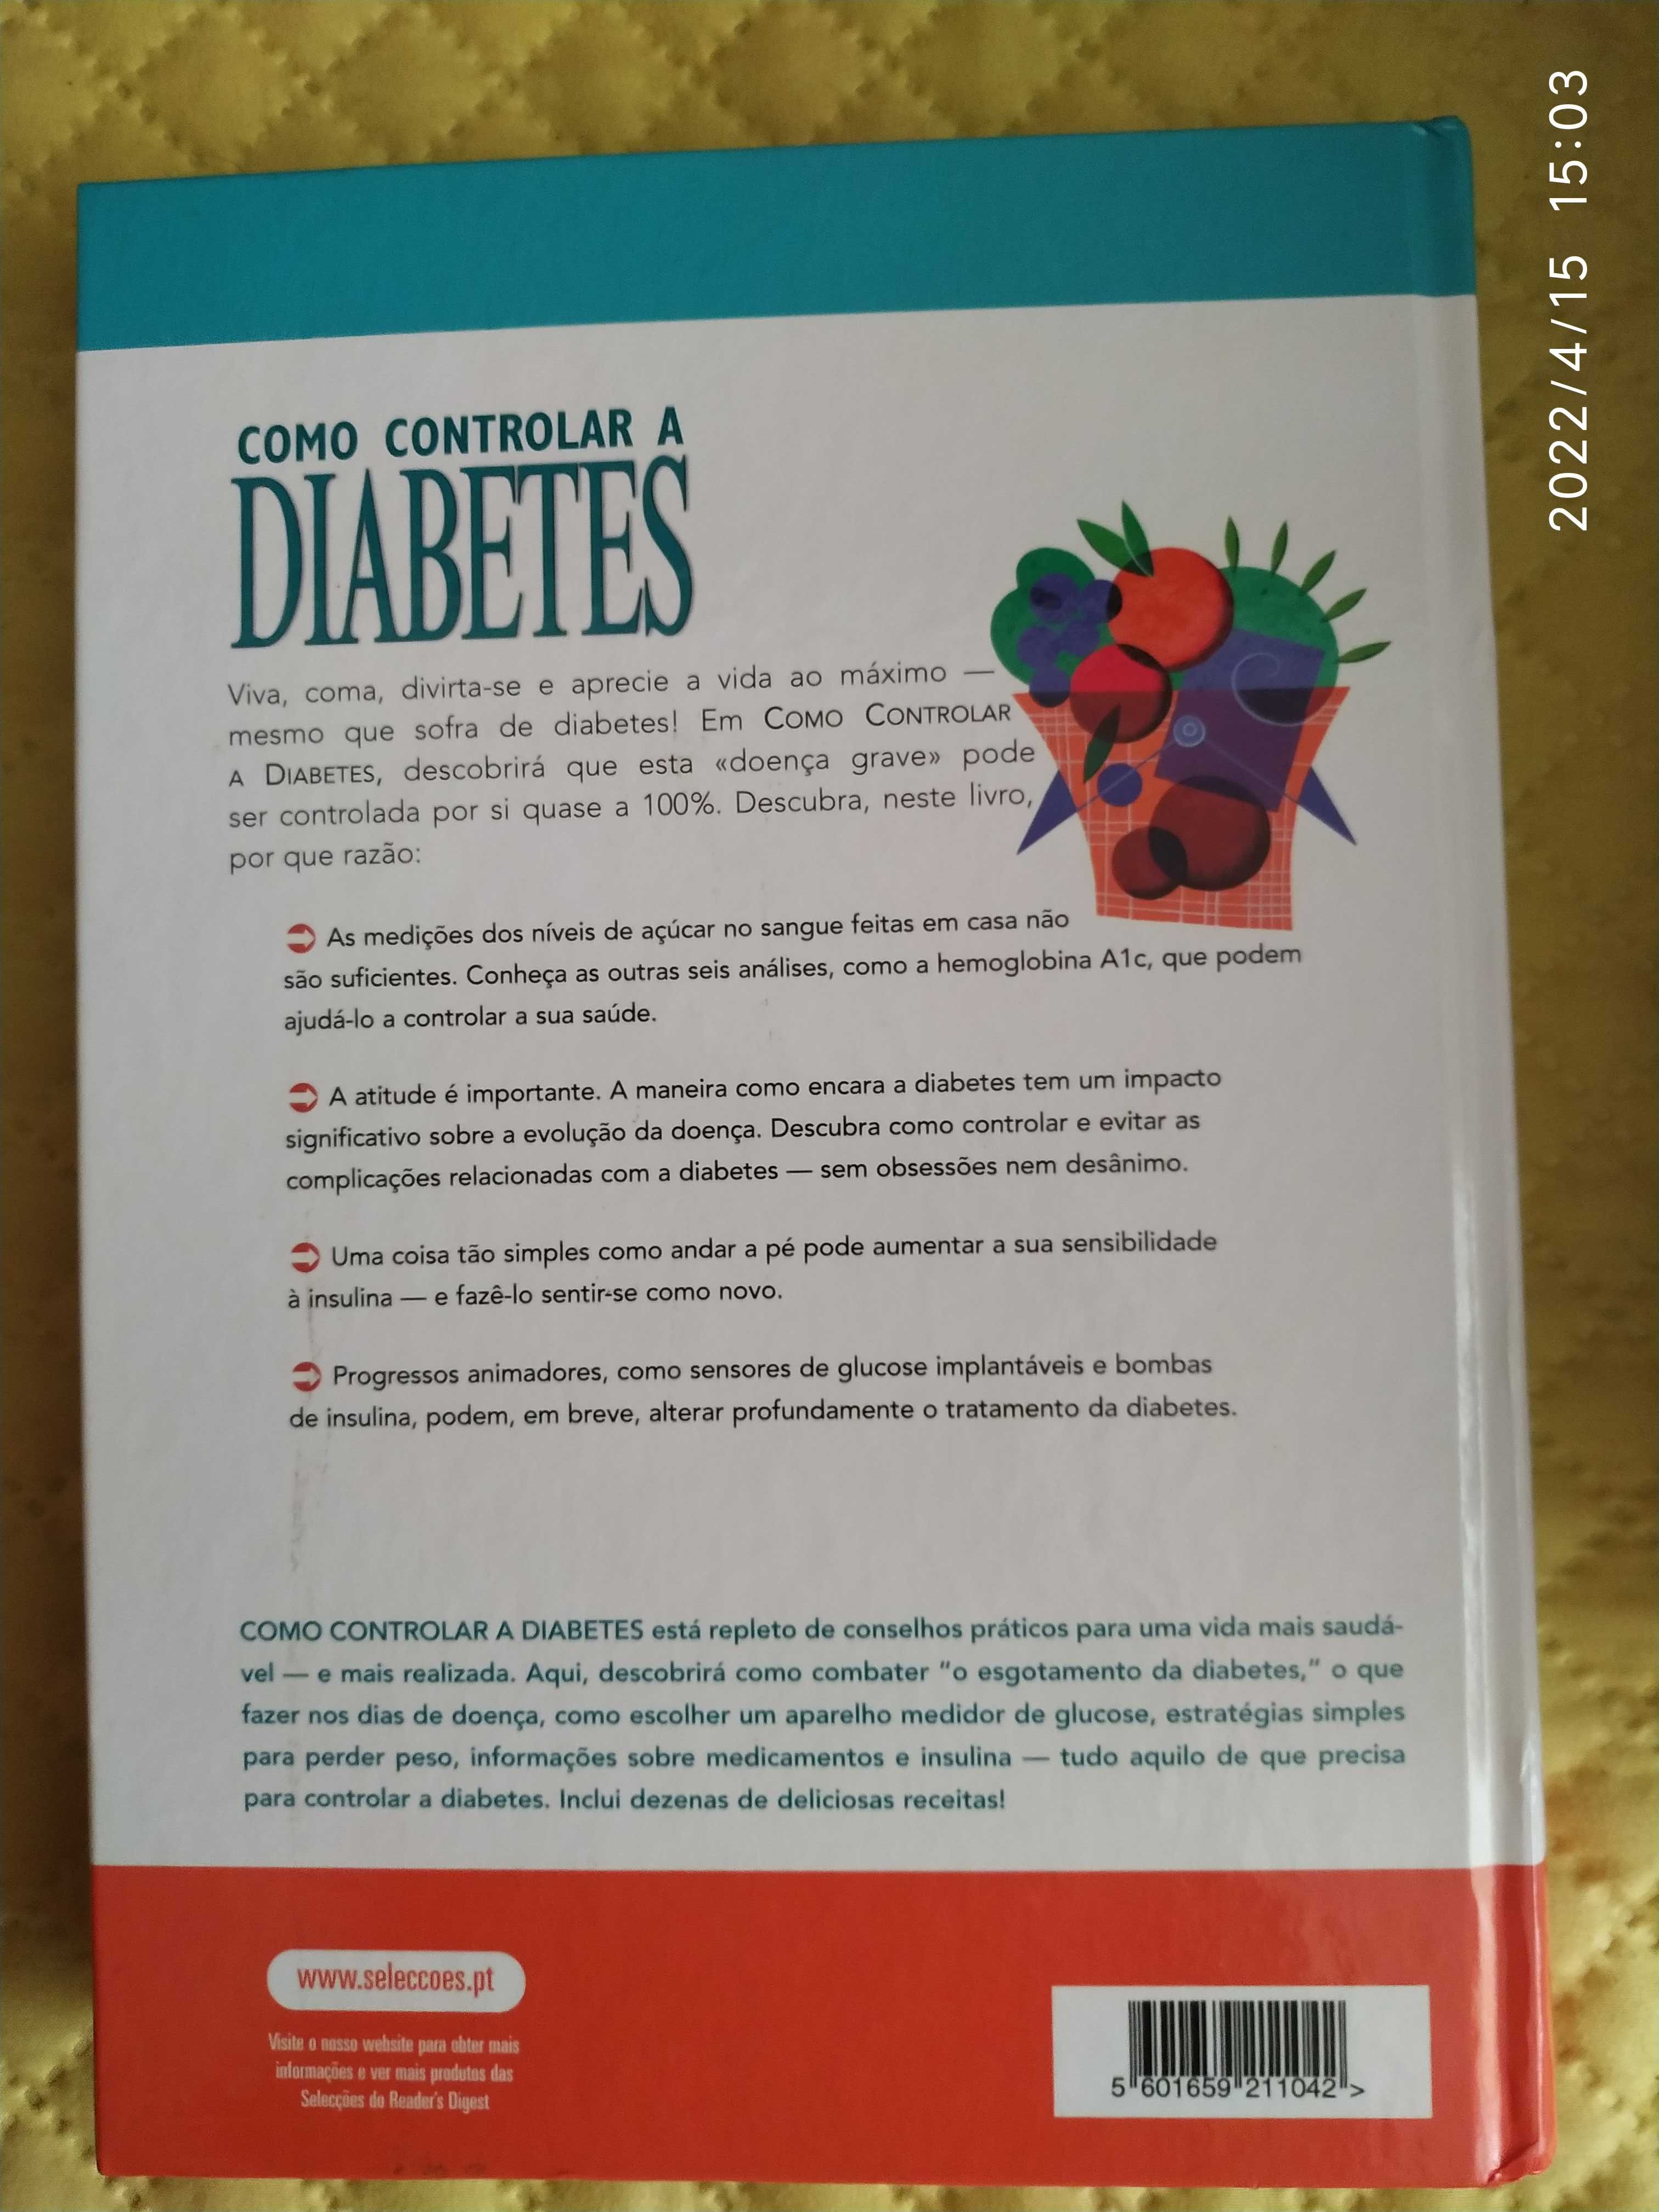 Livro "Como controlar a diabetes"